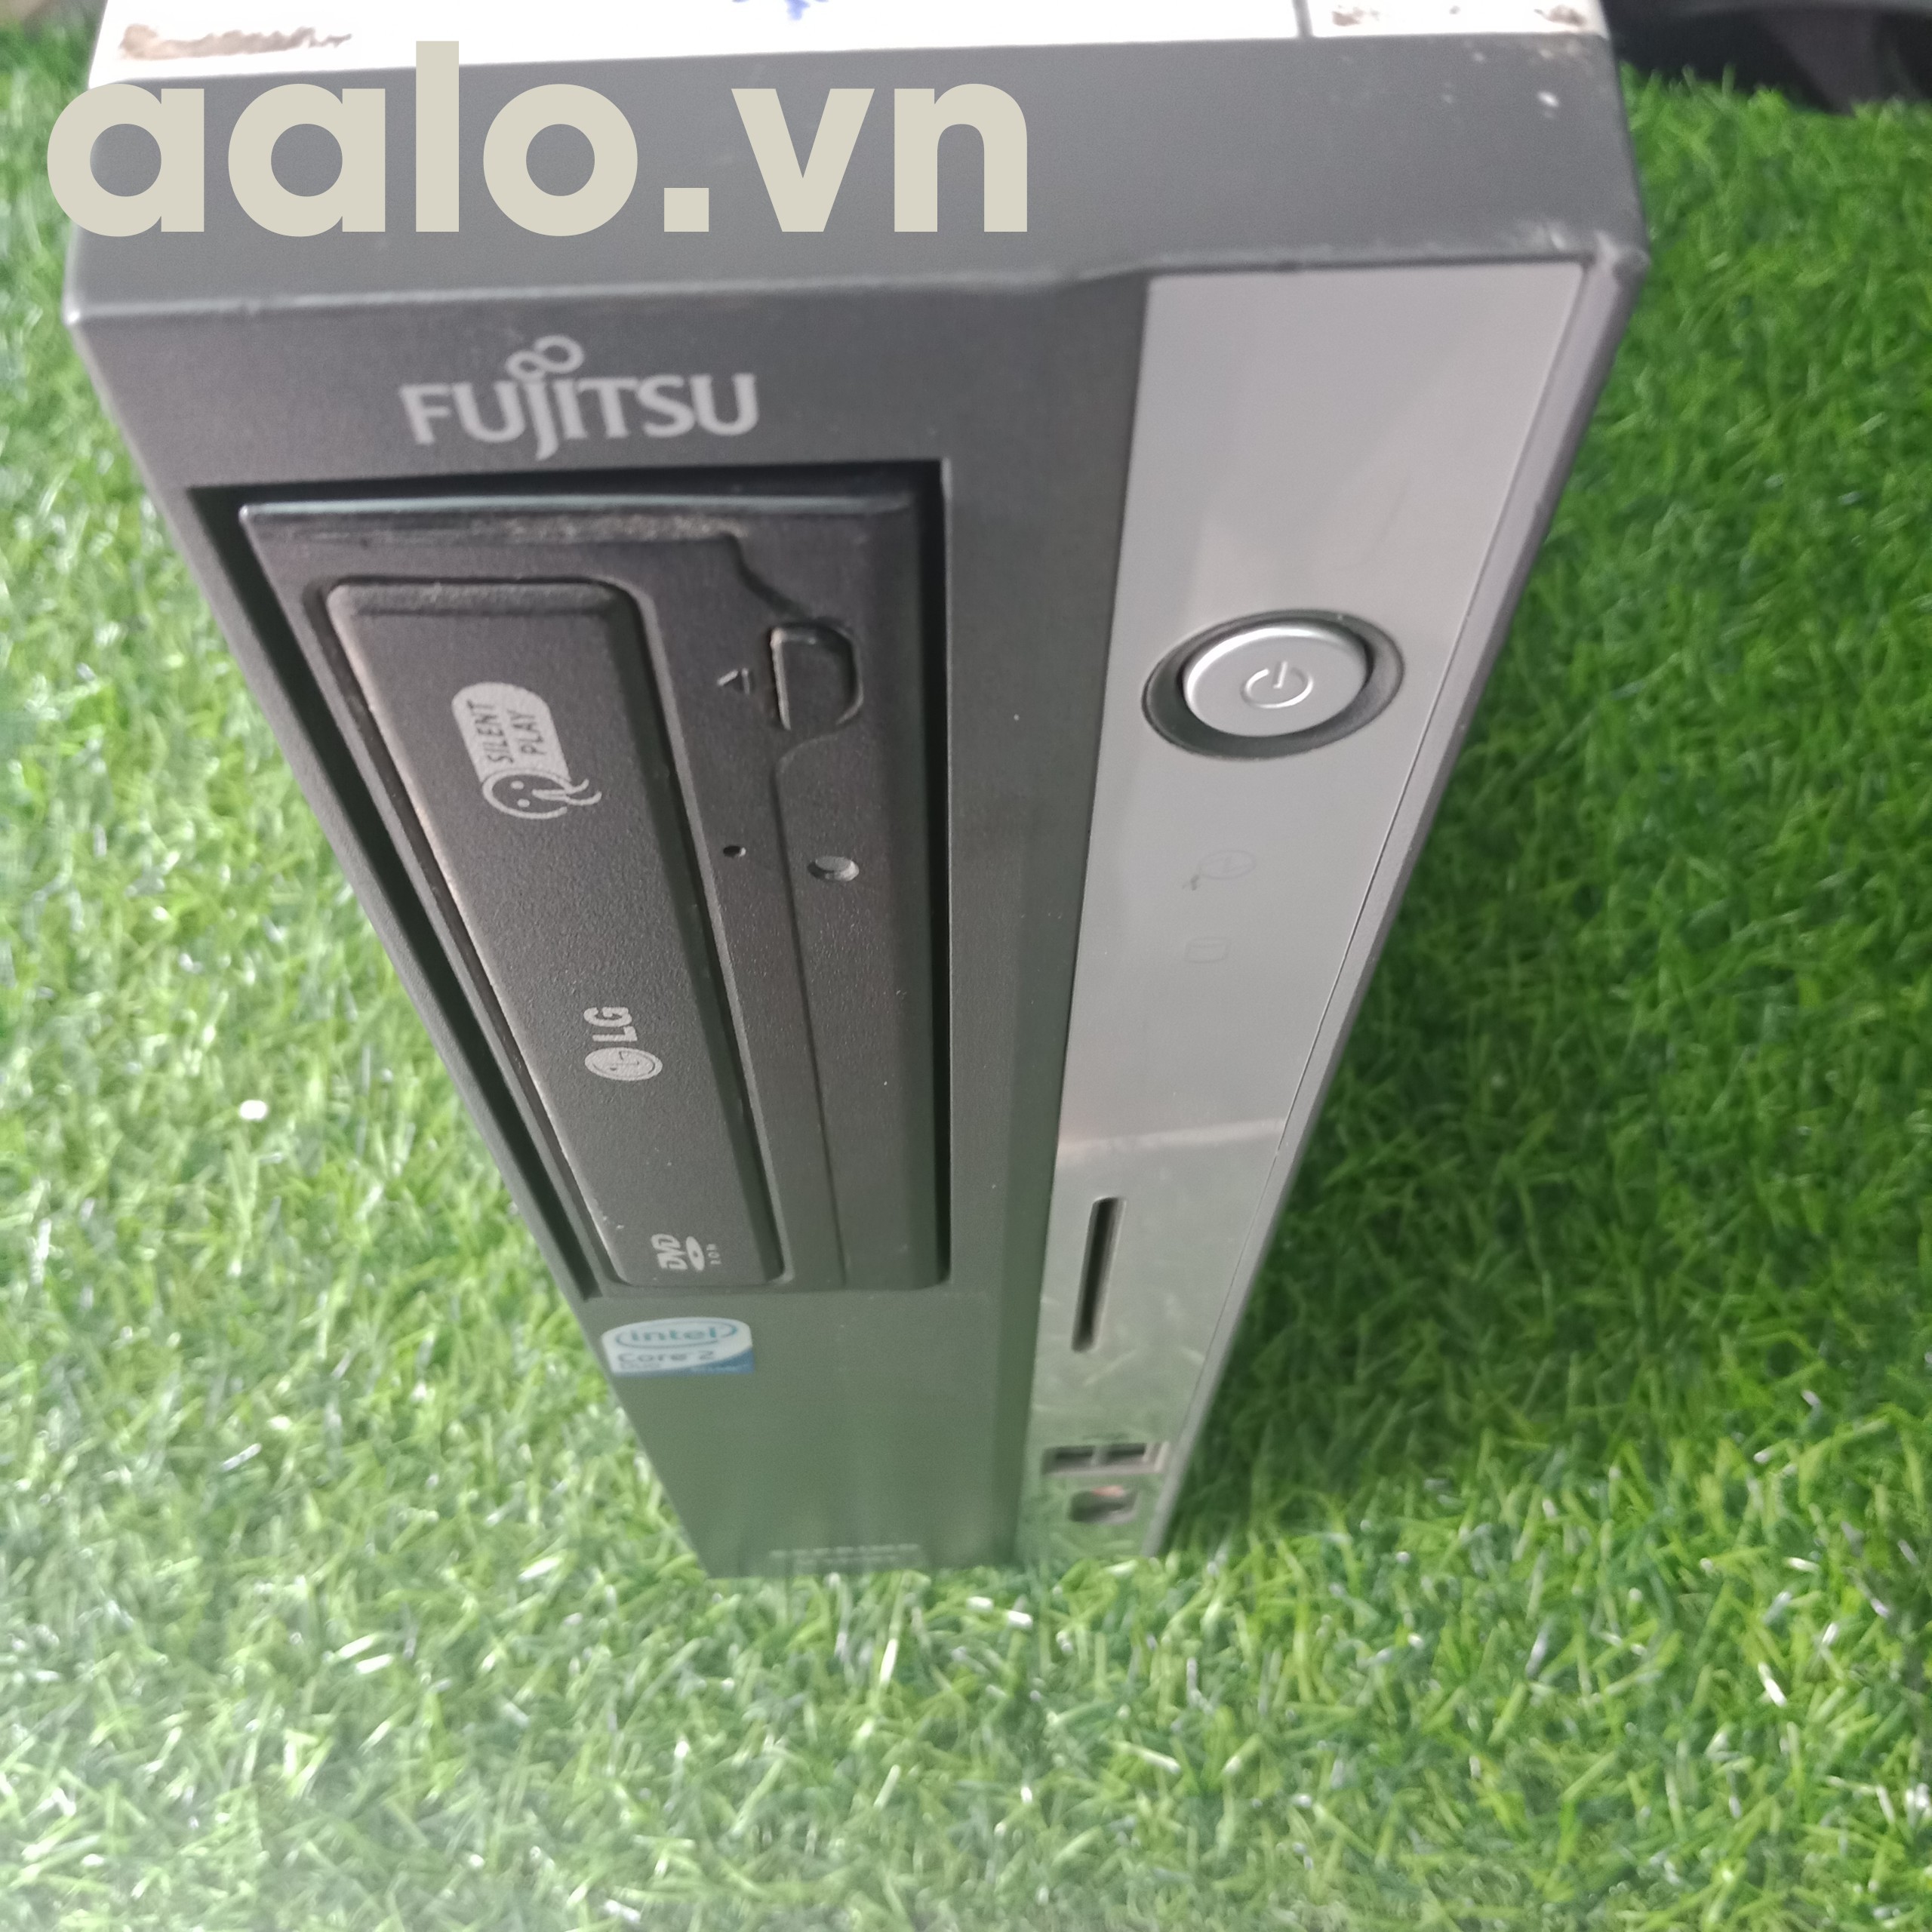 Máy tính đồng bộ Fujitsu Mainboard G31, CPU Intel G7200 ram DDR2 2G, ổ cứng 250G (cũ)